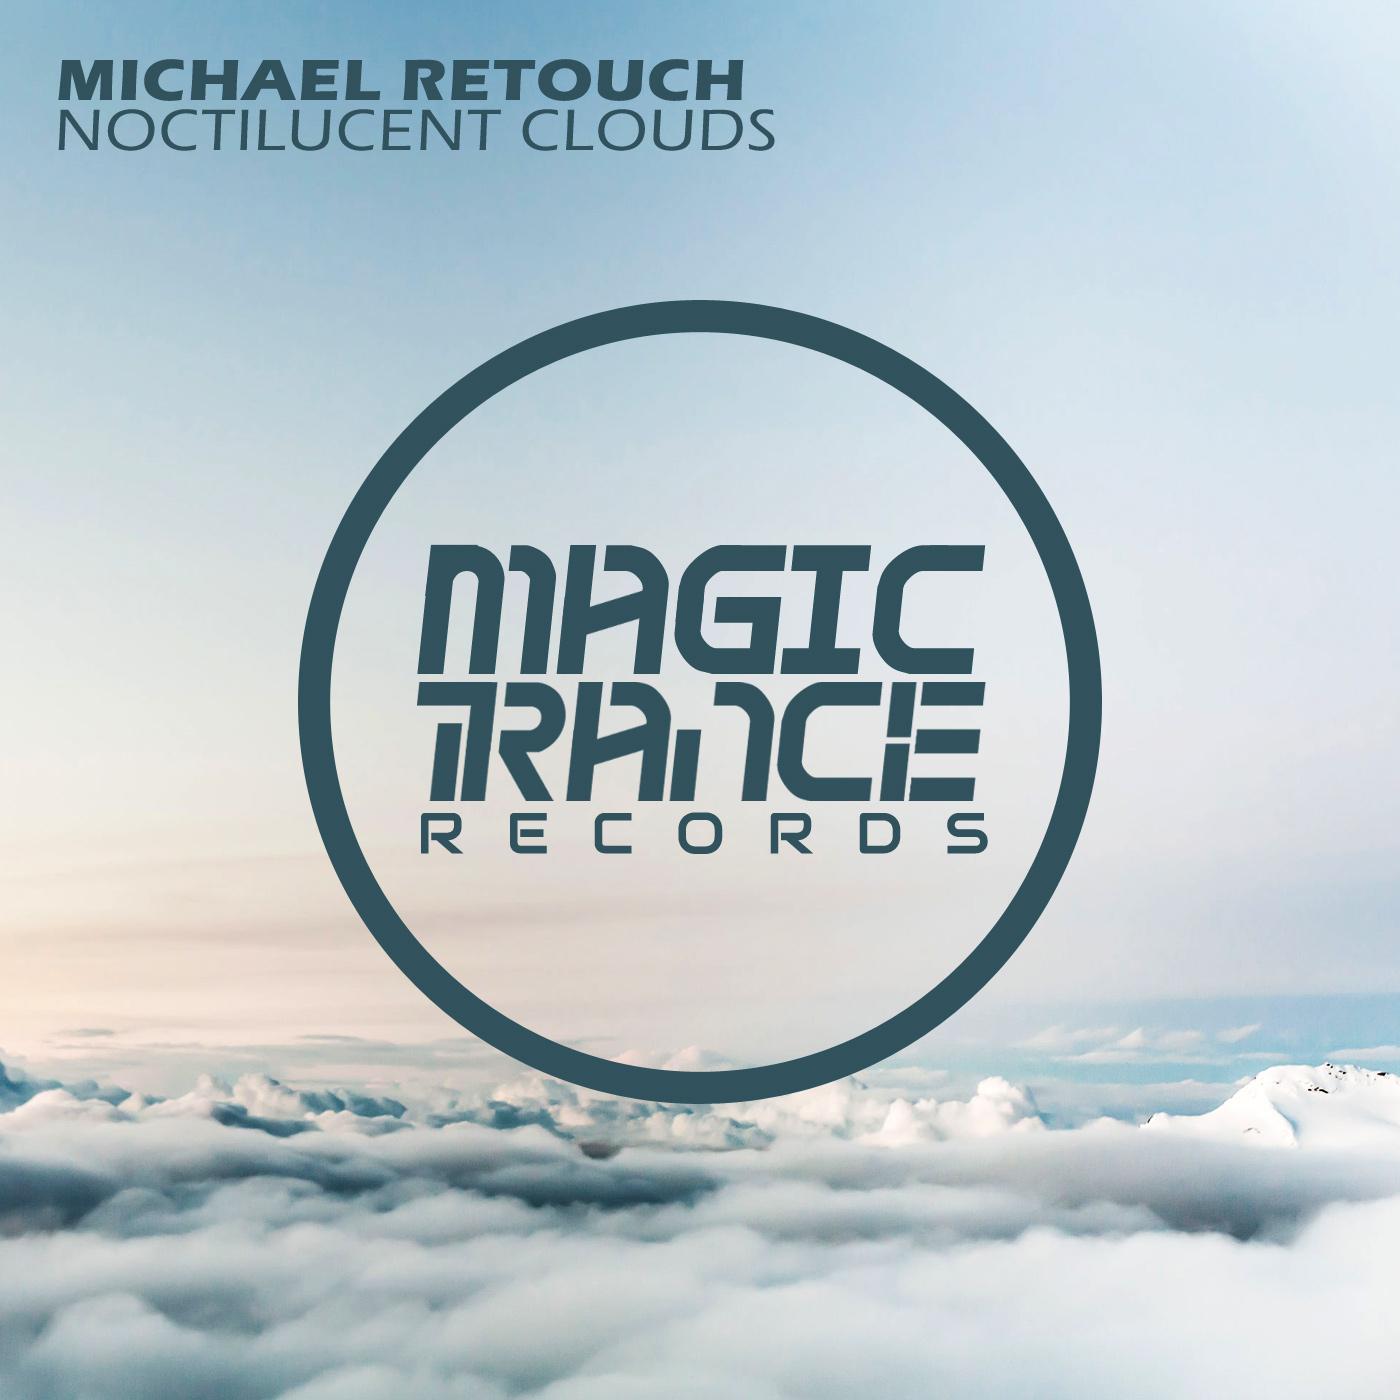 Michael Retouch - Noctilucent Clouds (Radio Edit)